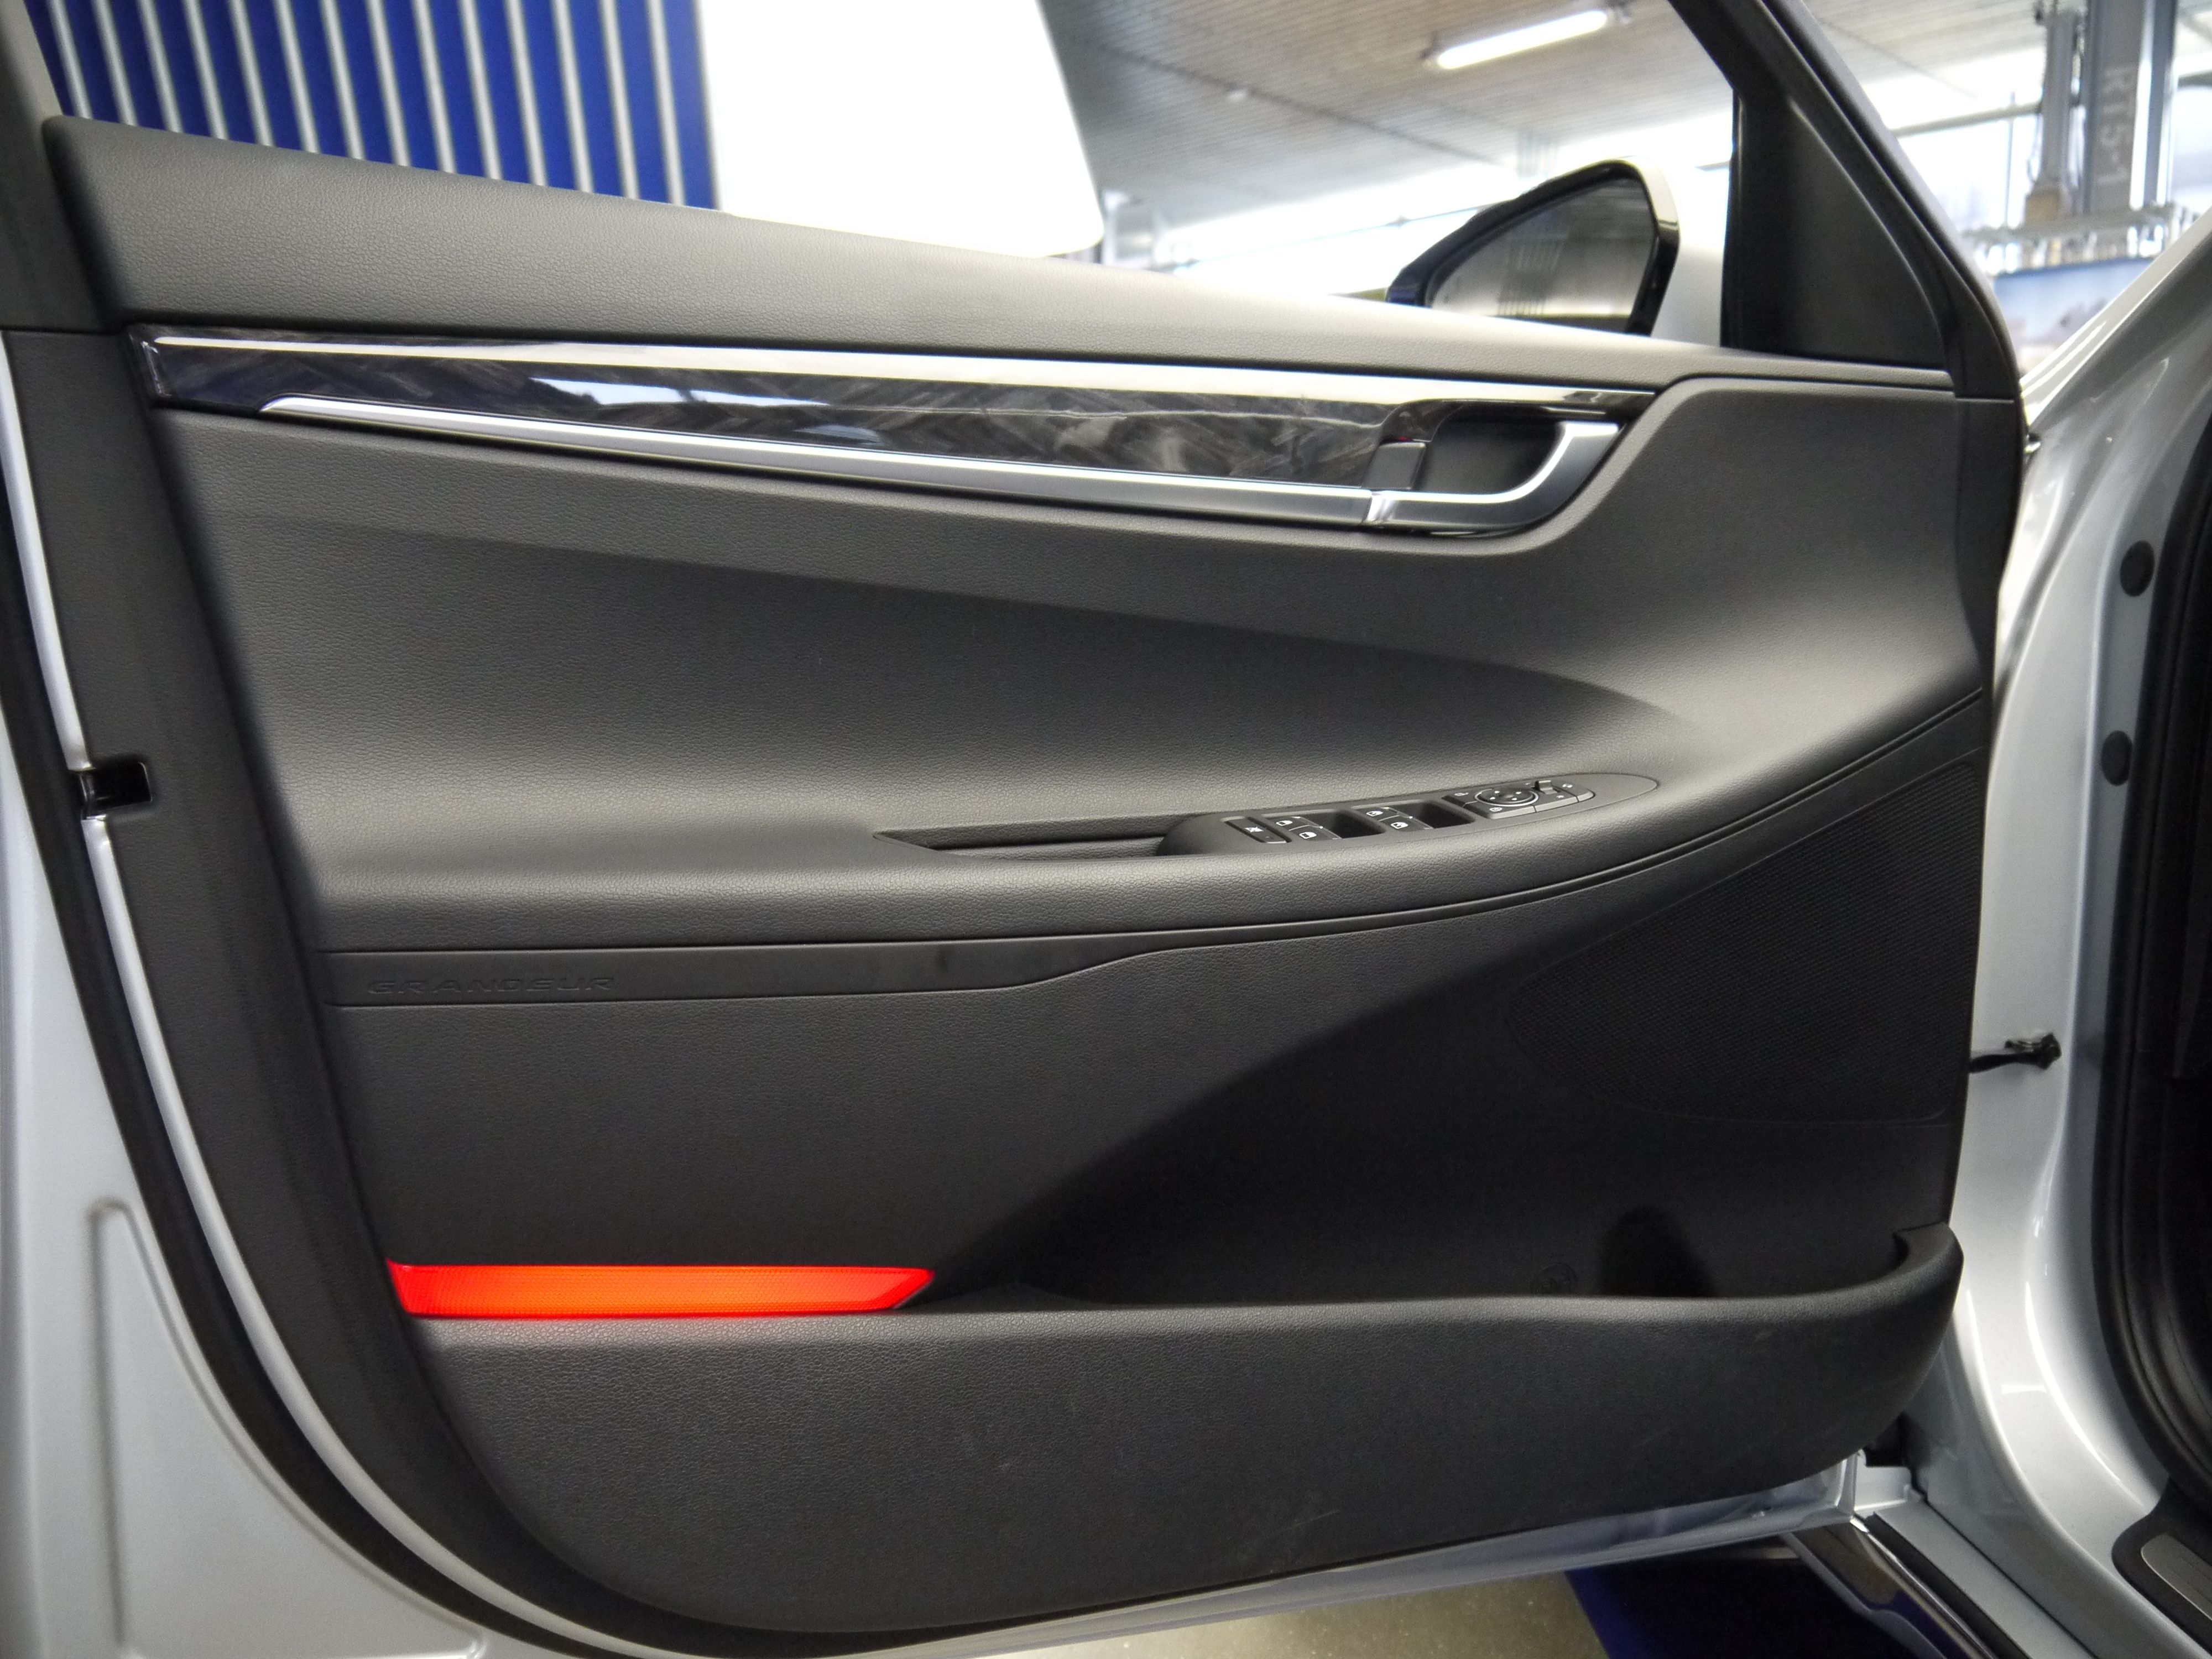 Hyundai Grandeur exterior specifications